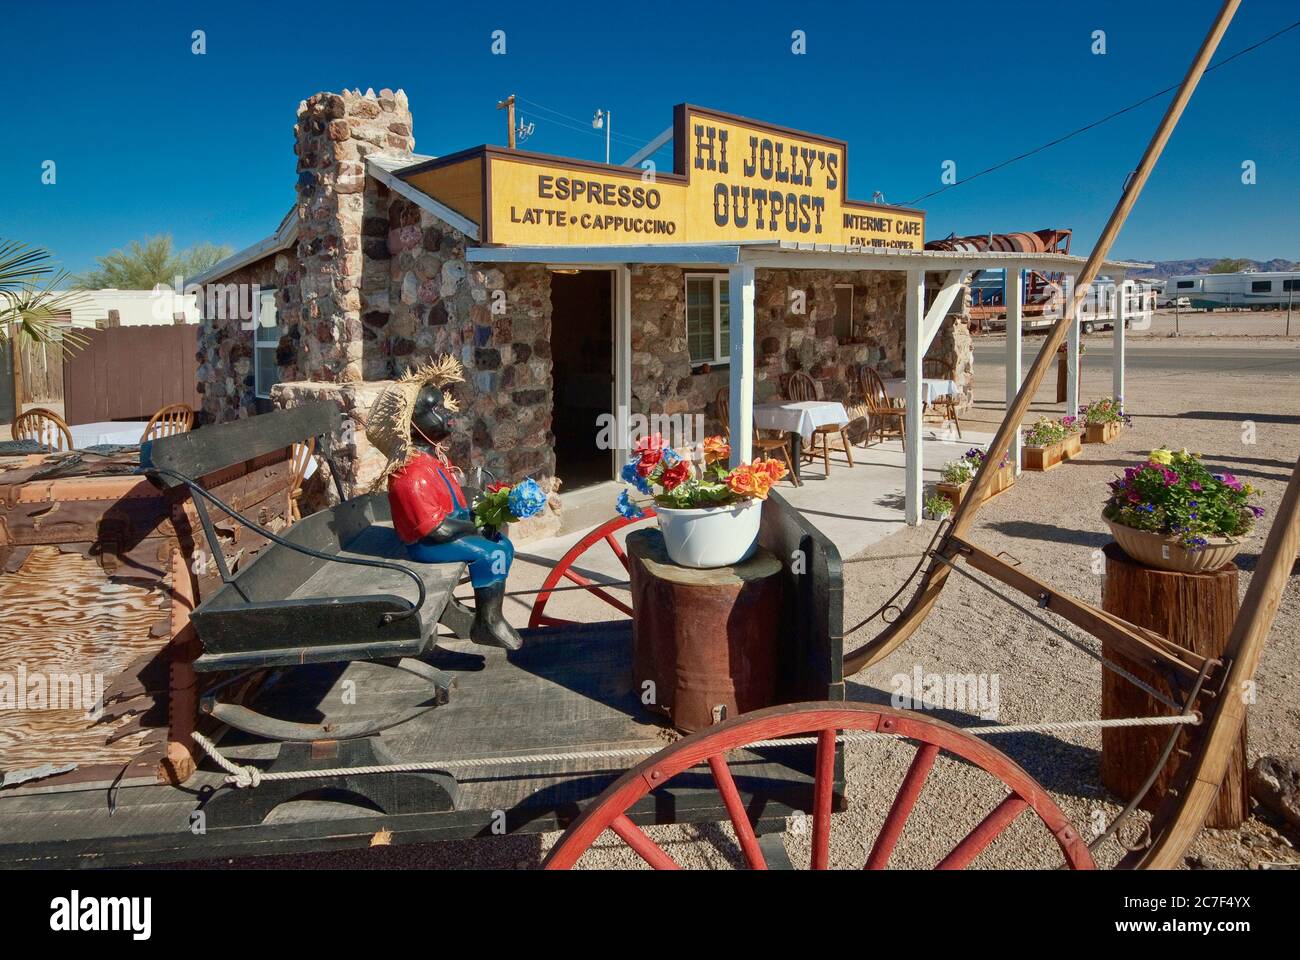 Wagon at Hi Jolly Outpost cafe in Quartzsite, Arizona, USA Stock Photo